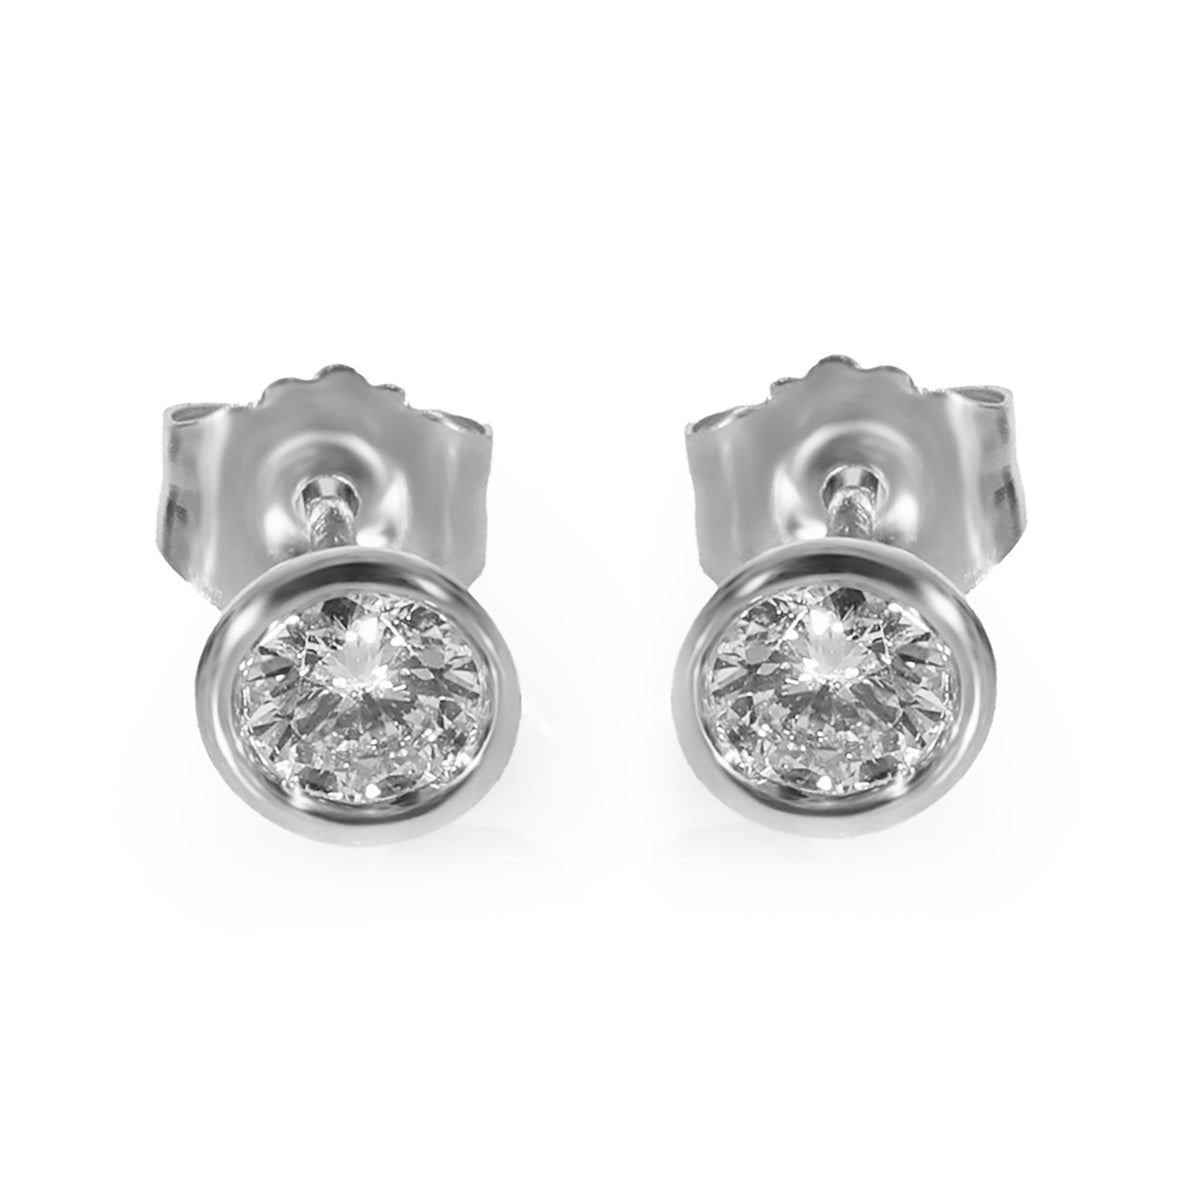 Bezel Set Diamond Stud Earrings in 14K White Gold 1/3 Ctw